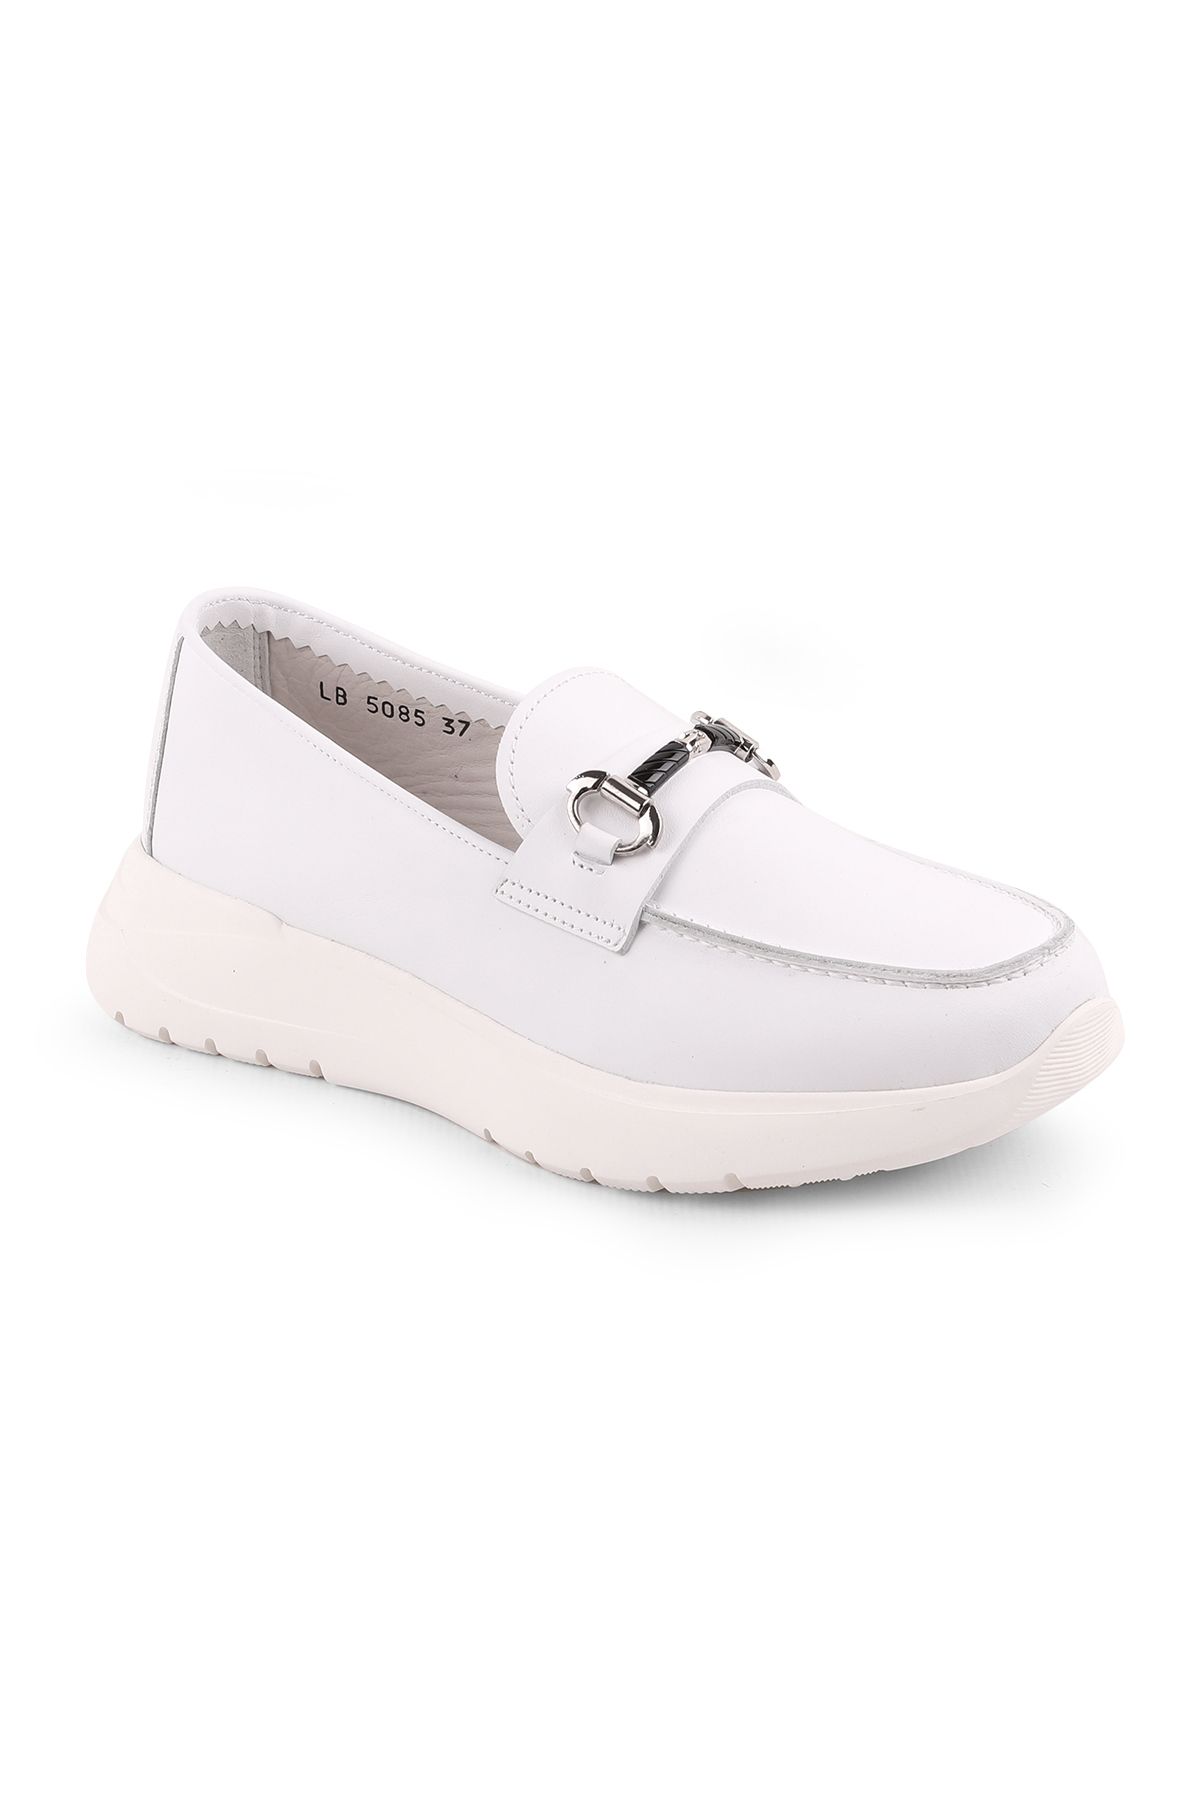 Libero Lz5085 Casual Kadın Ayakkabı Beyaz